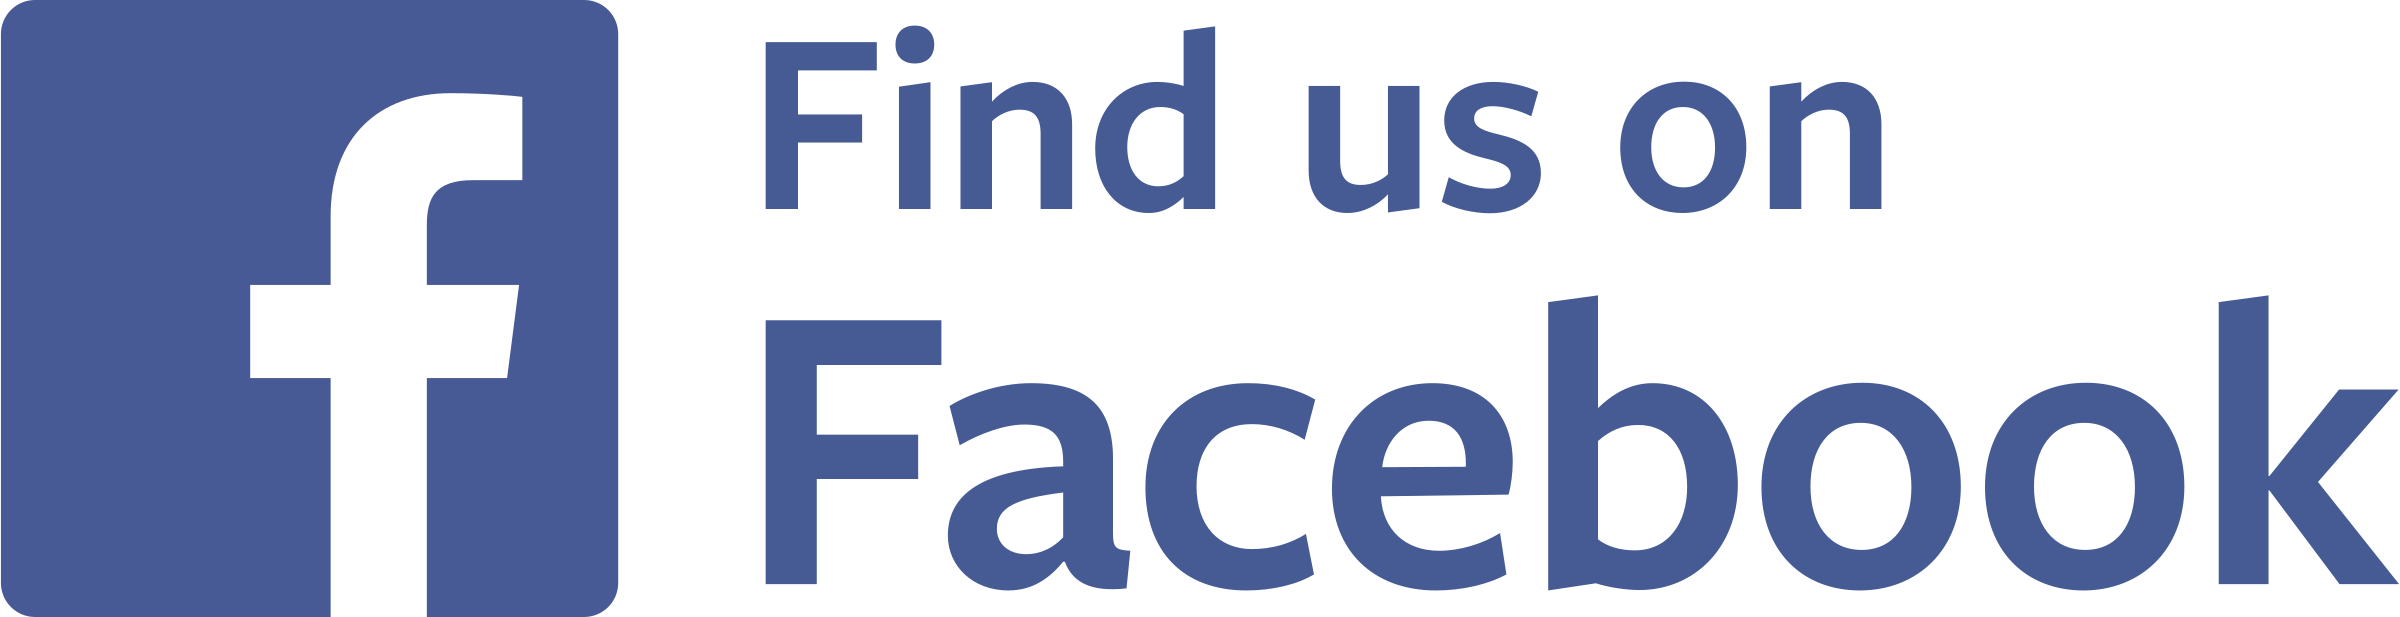 Square Facebook Logo Transparent Images